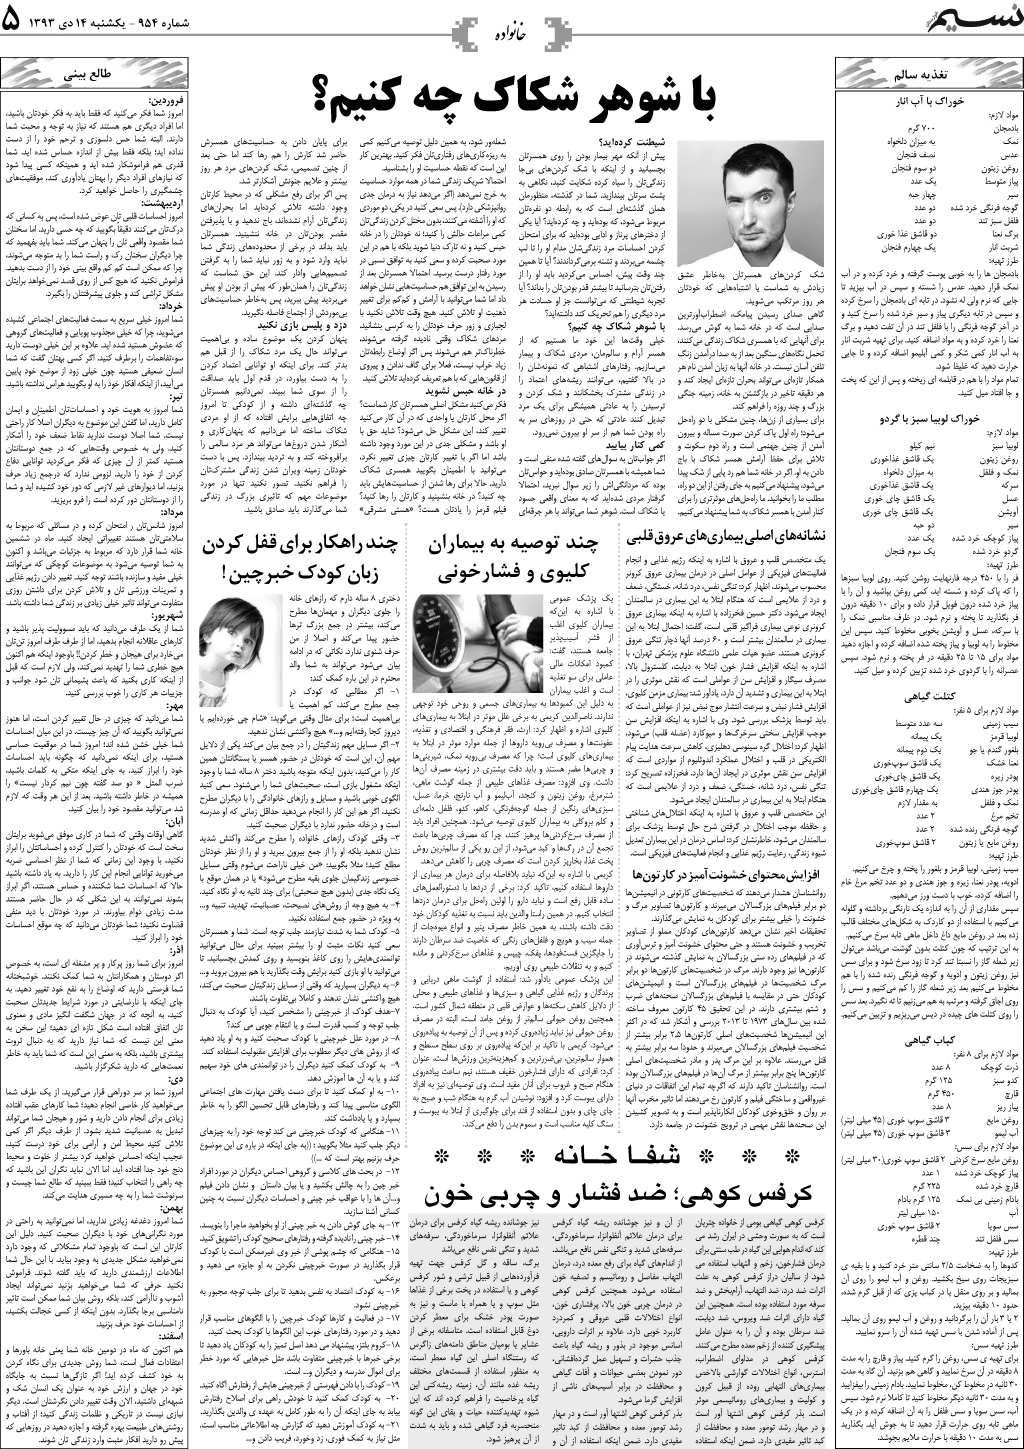 صفحه خانواده روزنامه نسیم شماره 954